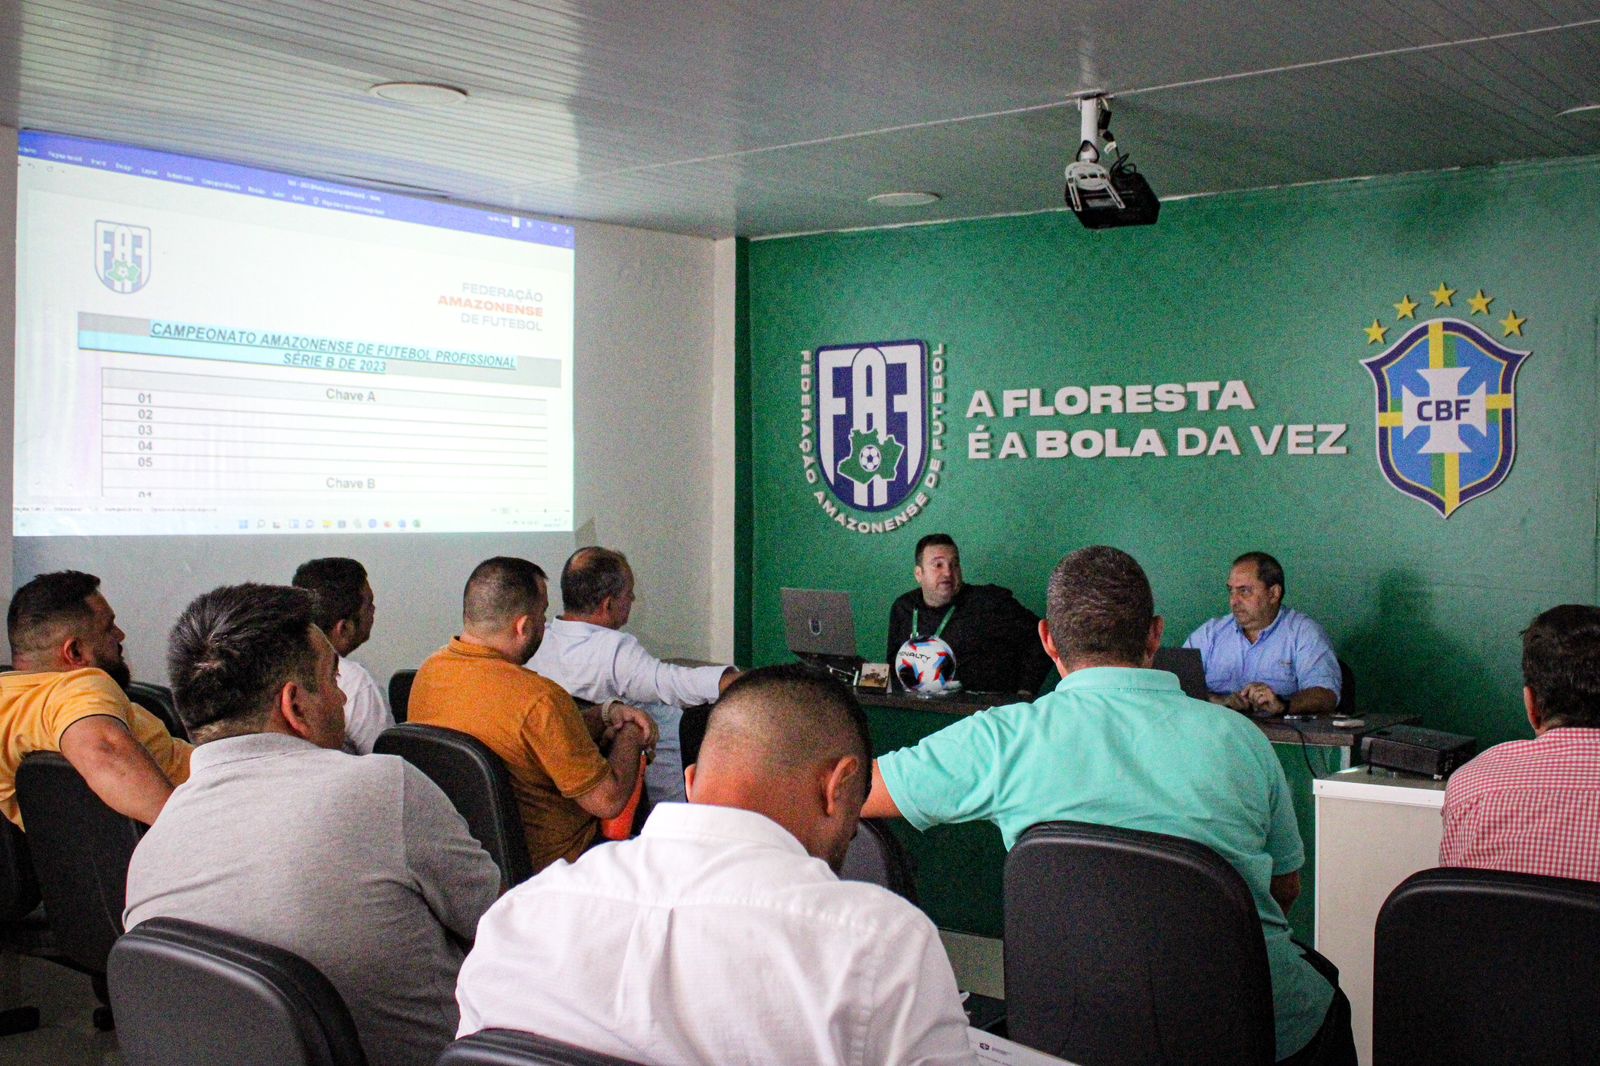 Barezão Série B: FAF realiza 2ª reunião de Conselho Técnico entre os clubes